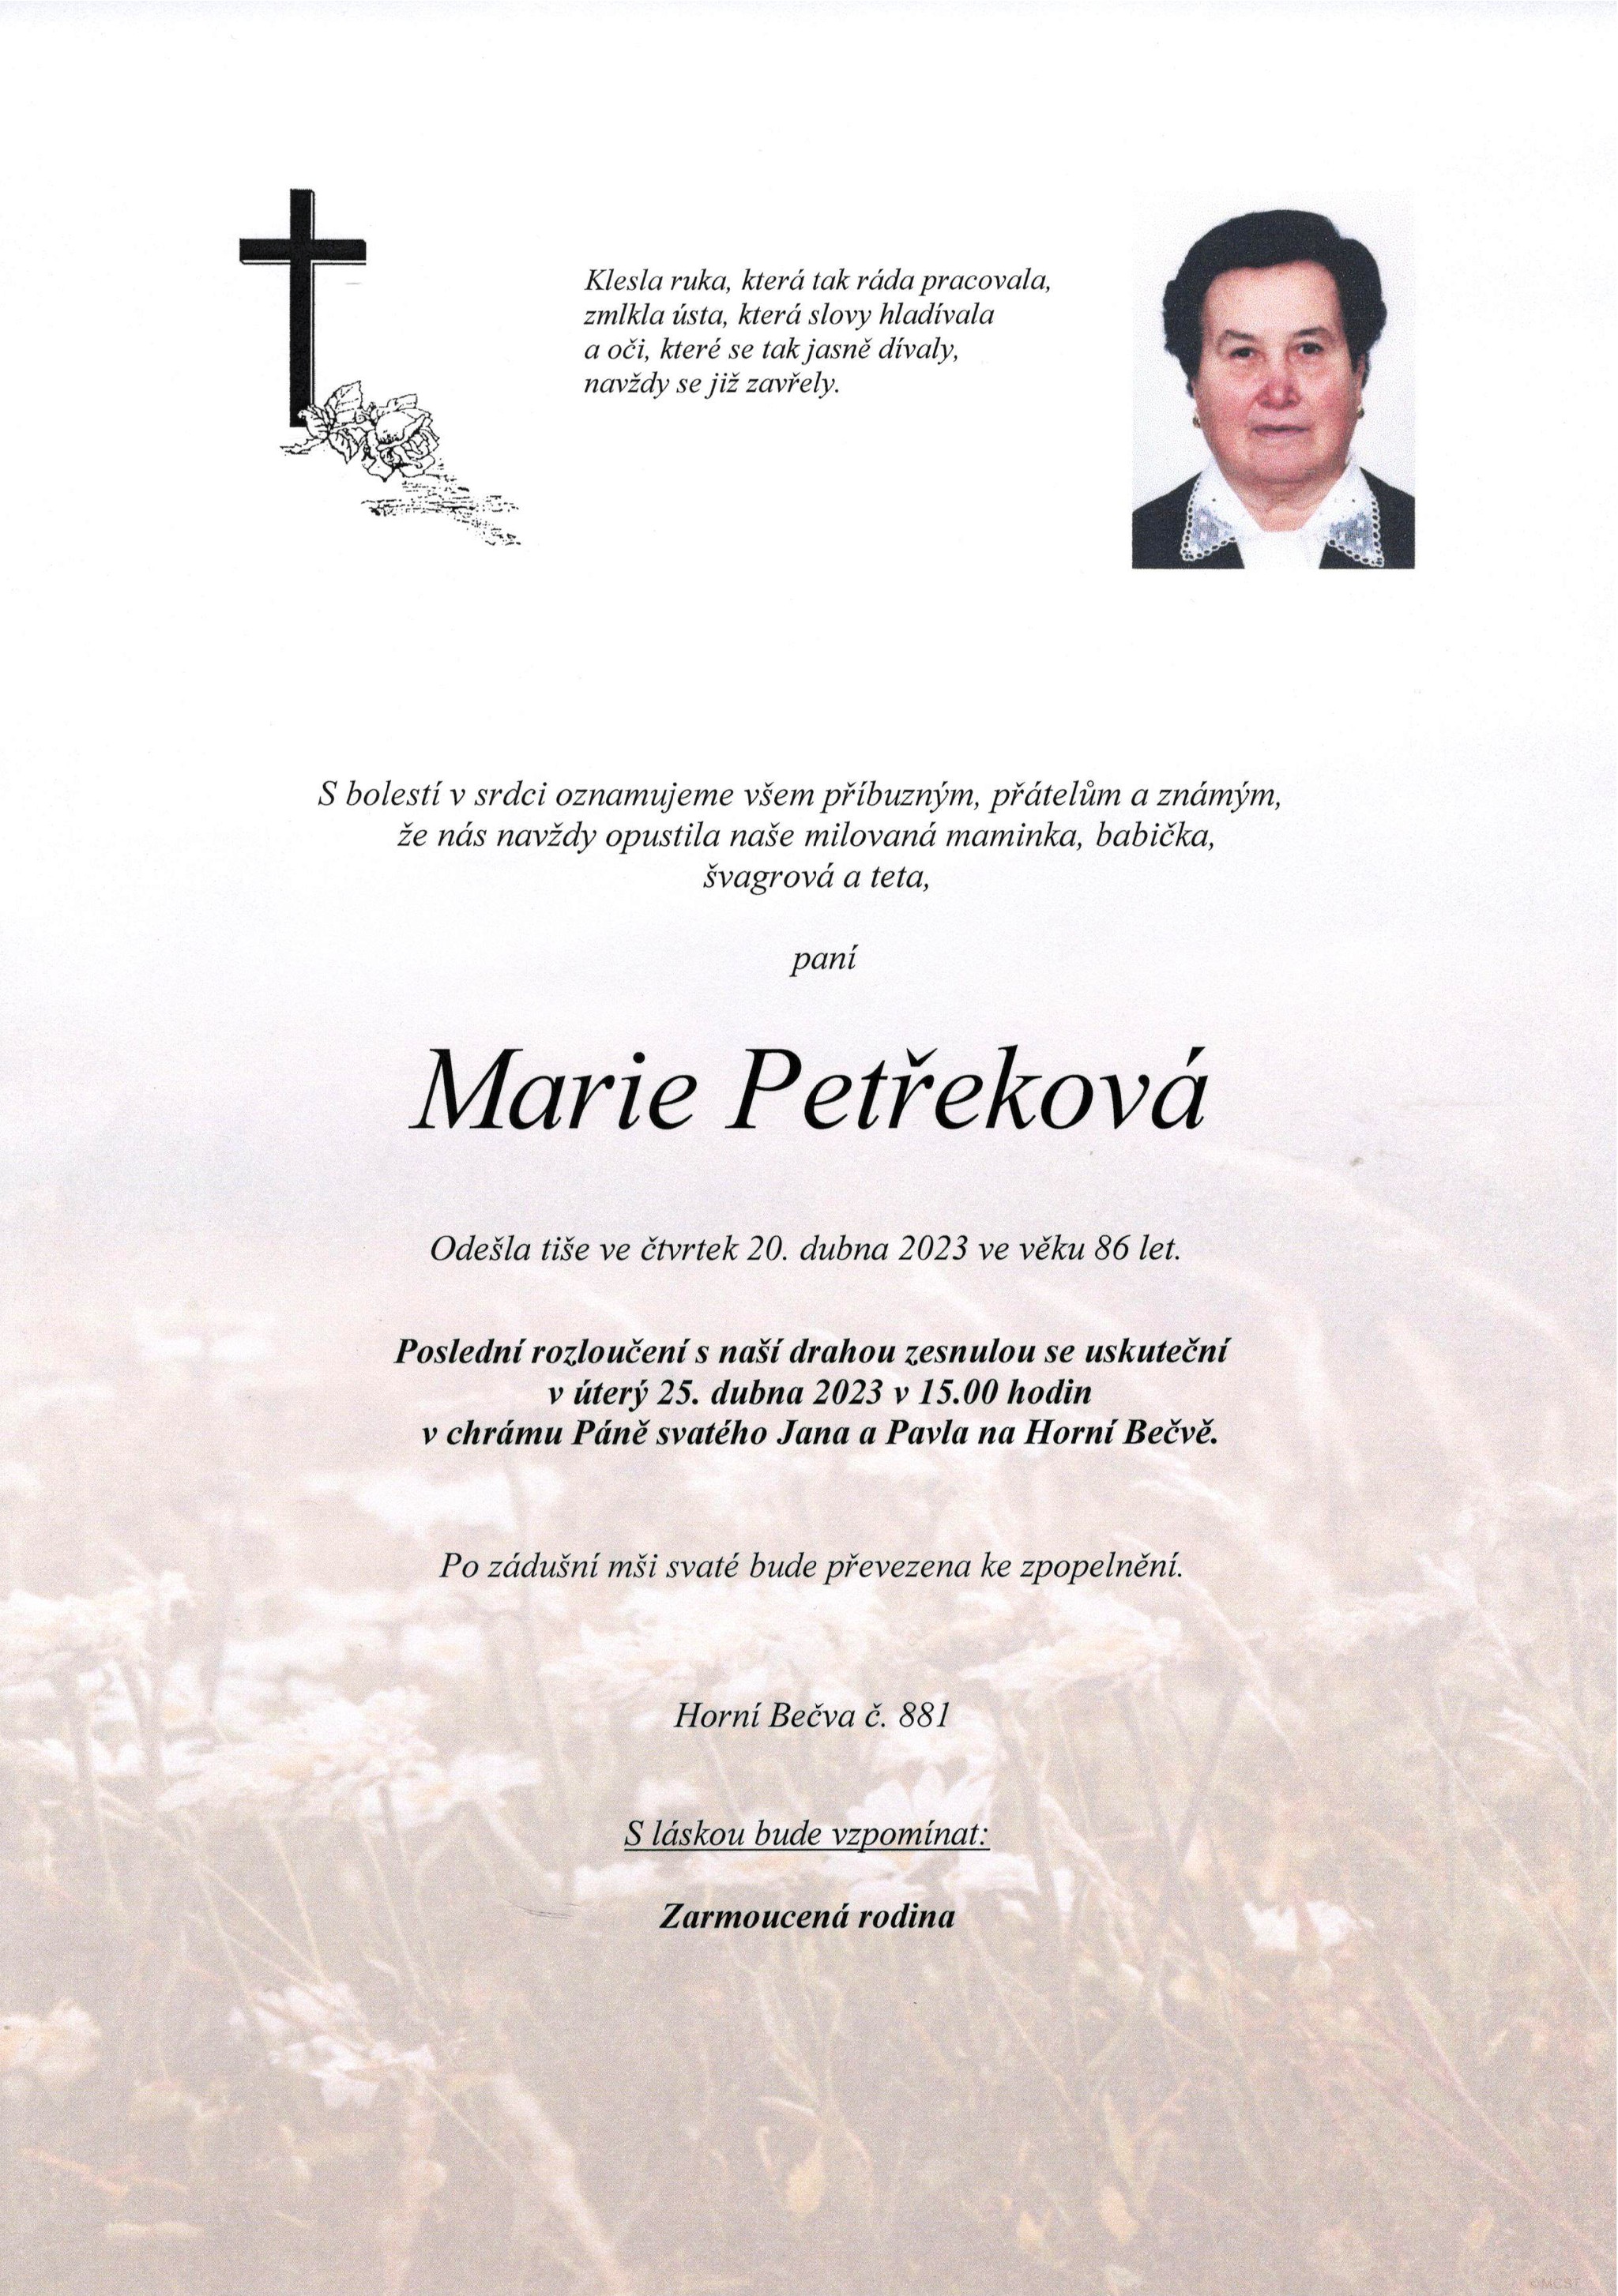 Marie Petřeková